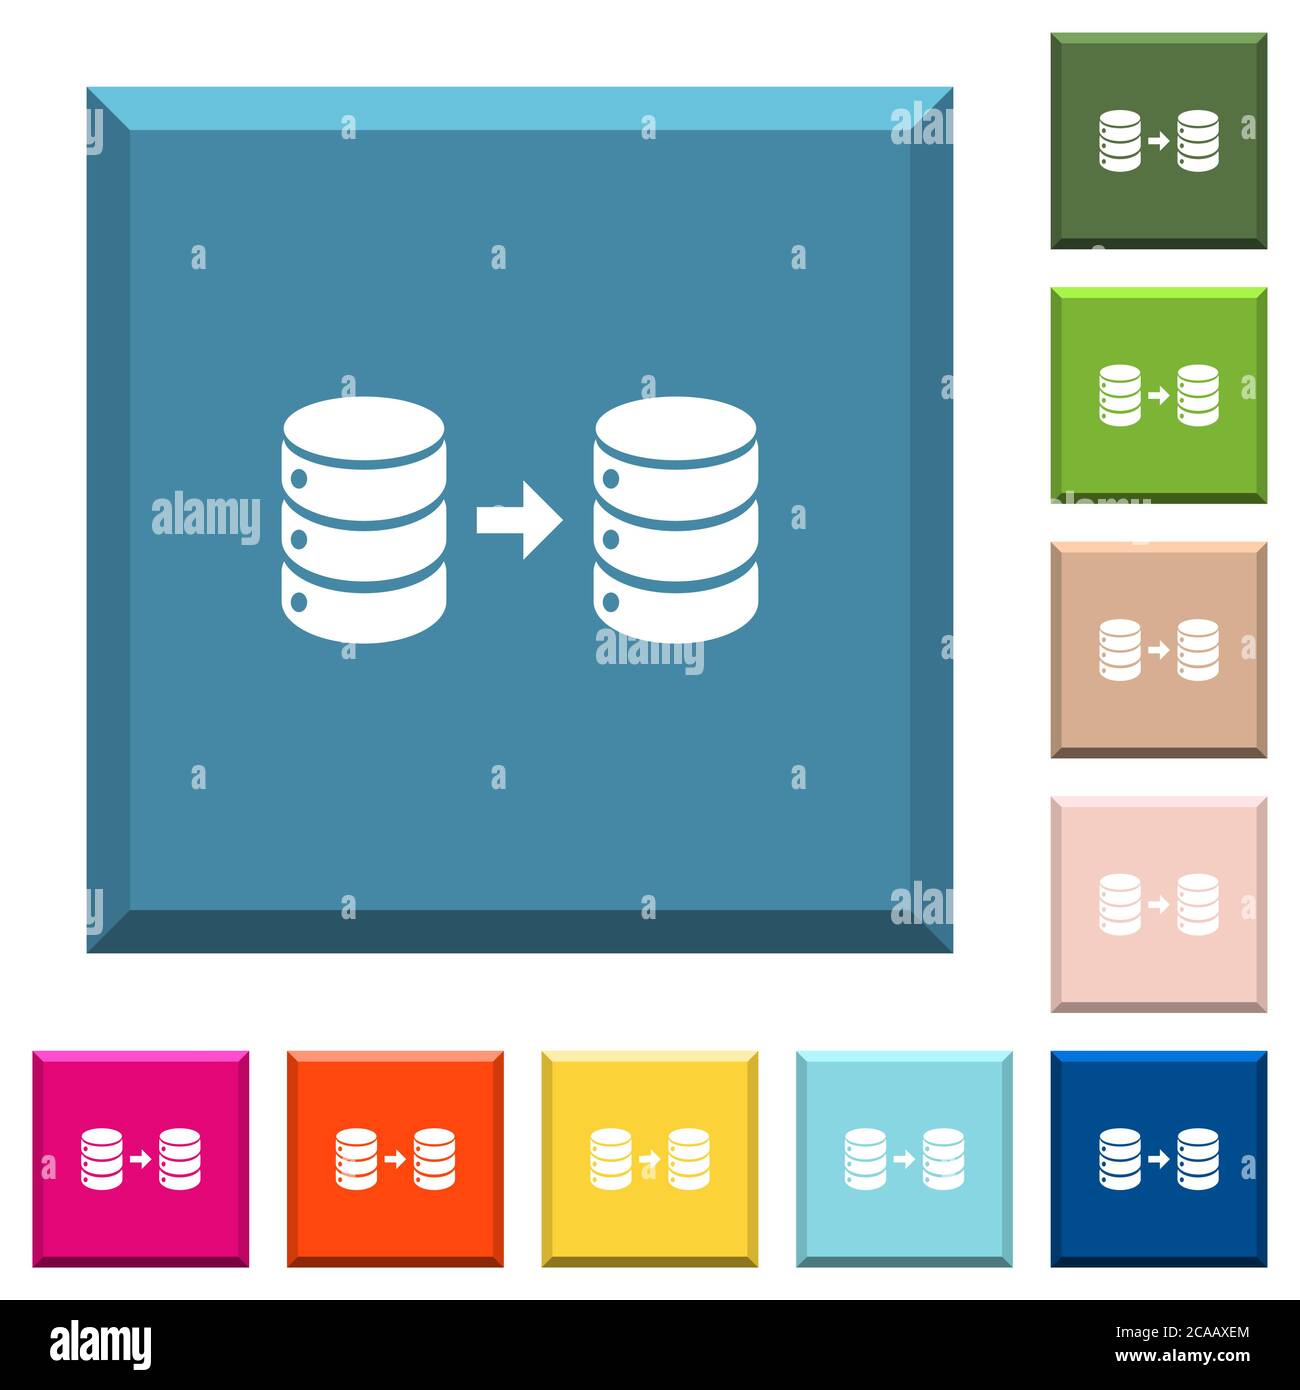 Datenbank spiegelt weiße Symbole auf kantigen quadratischen Tasten in verschiedenen trendigen Farben Stock Vektor